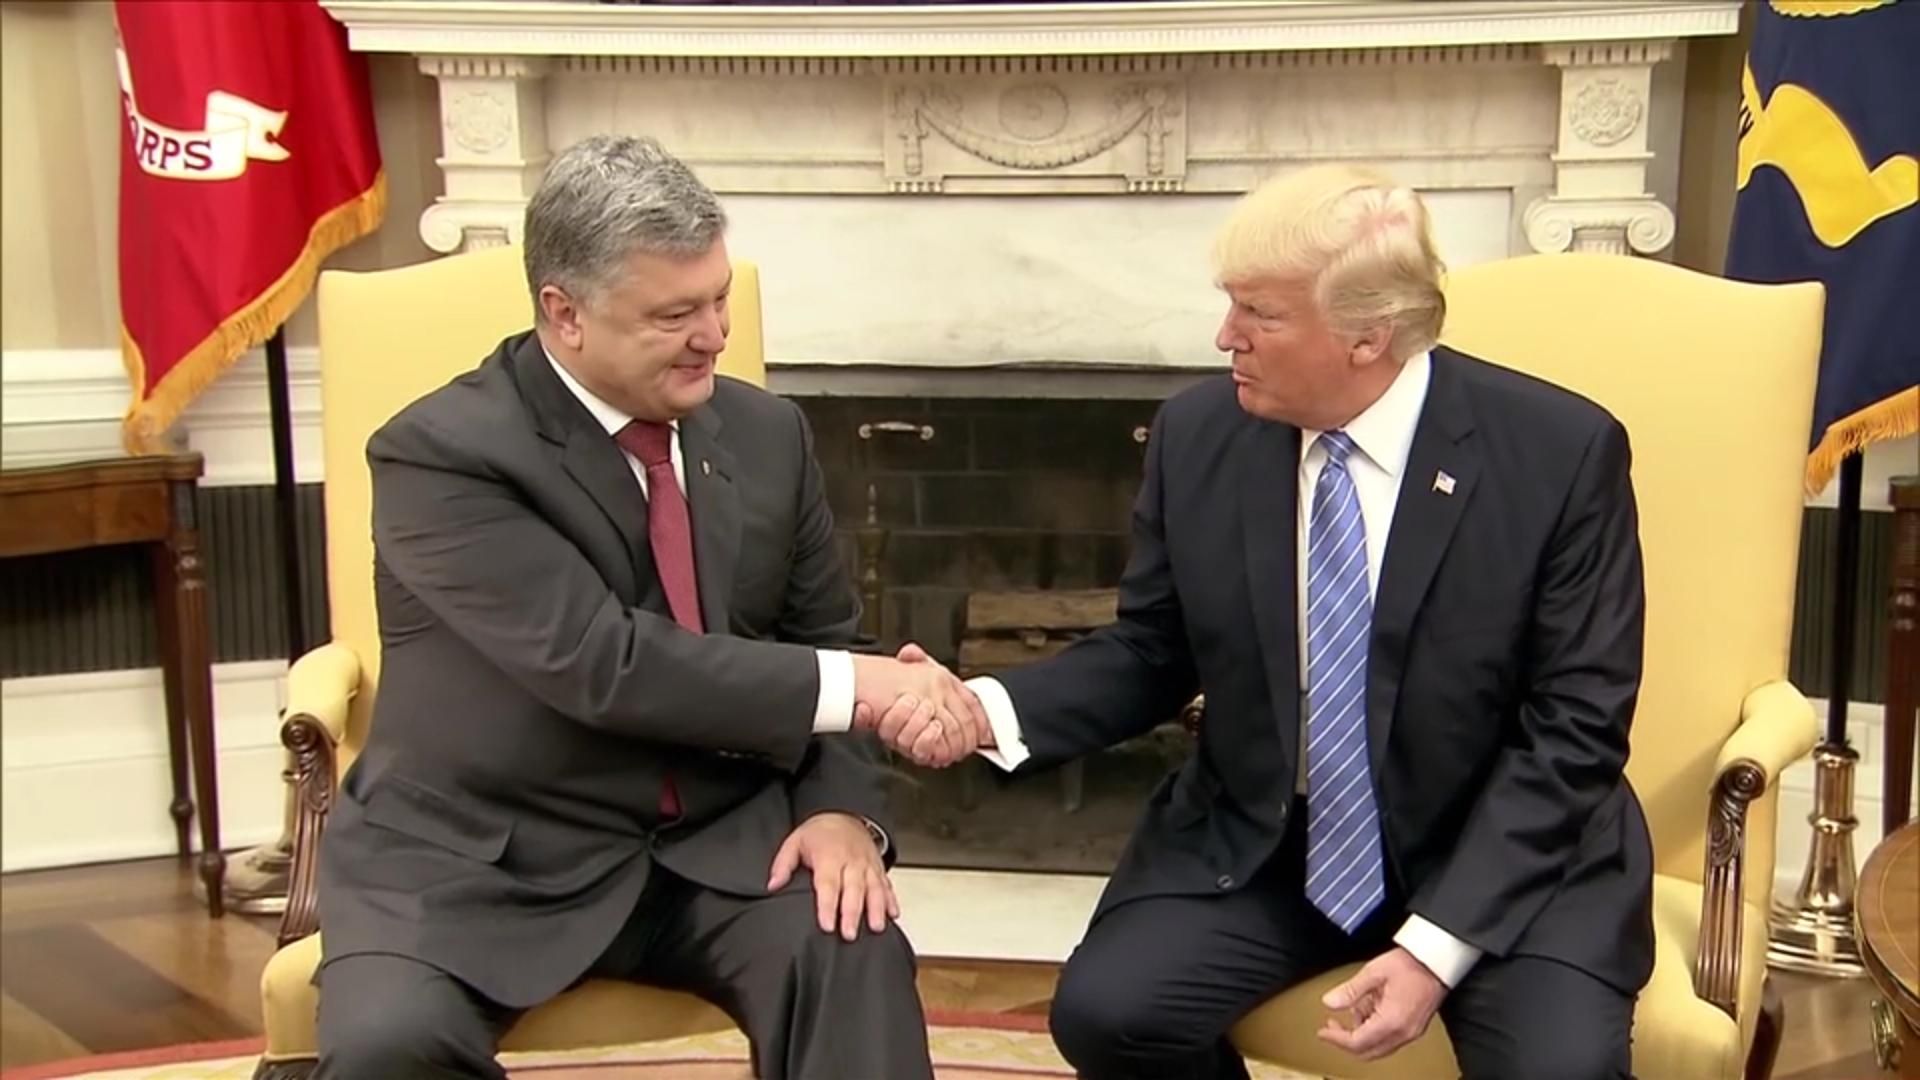  Угода про зону вільної торгівлі: Ослунд пояснив, як США можуть допомогти Україні